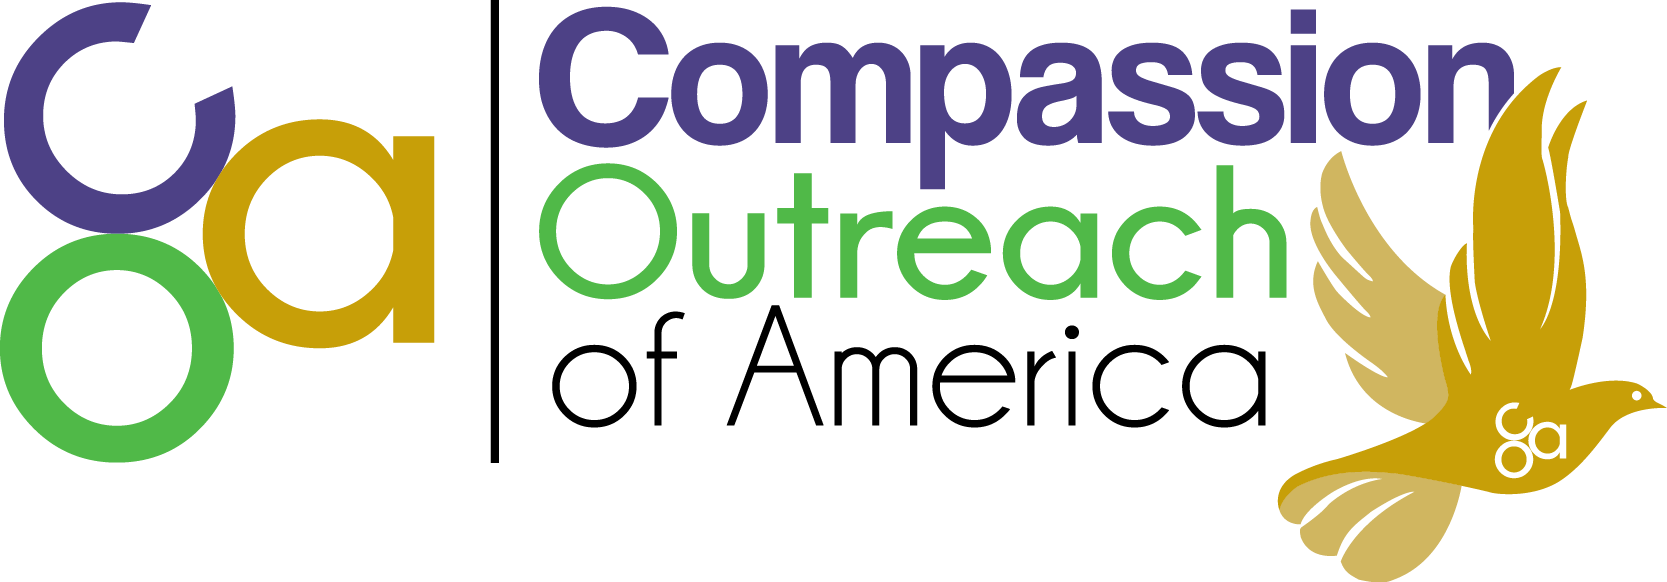 Compassion Outreach of America logo